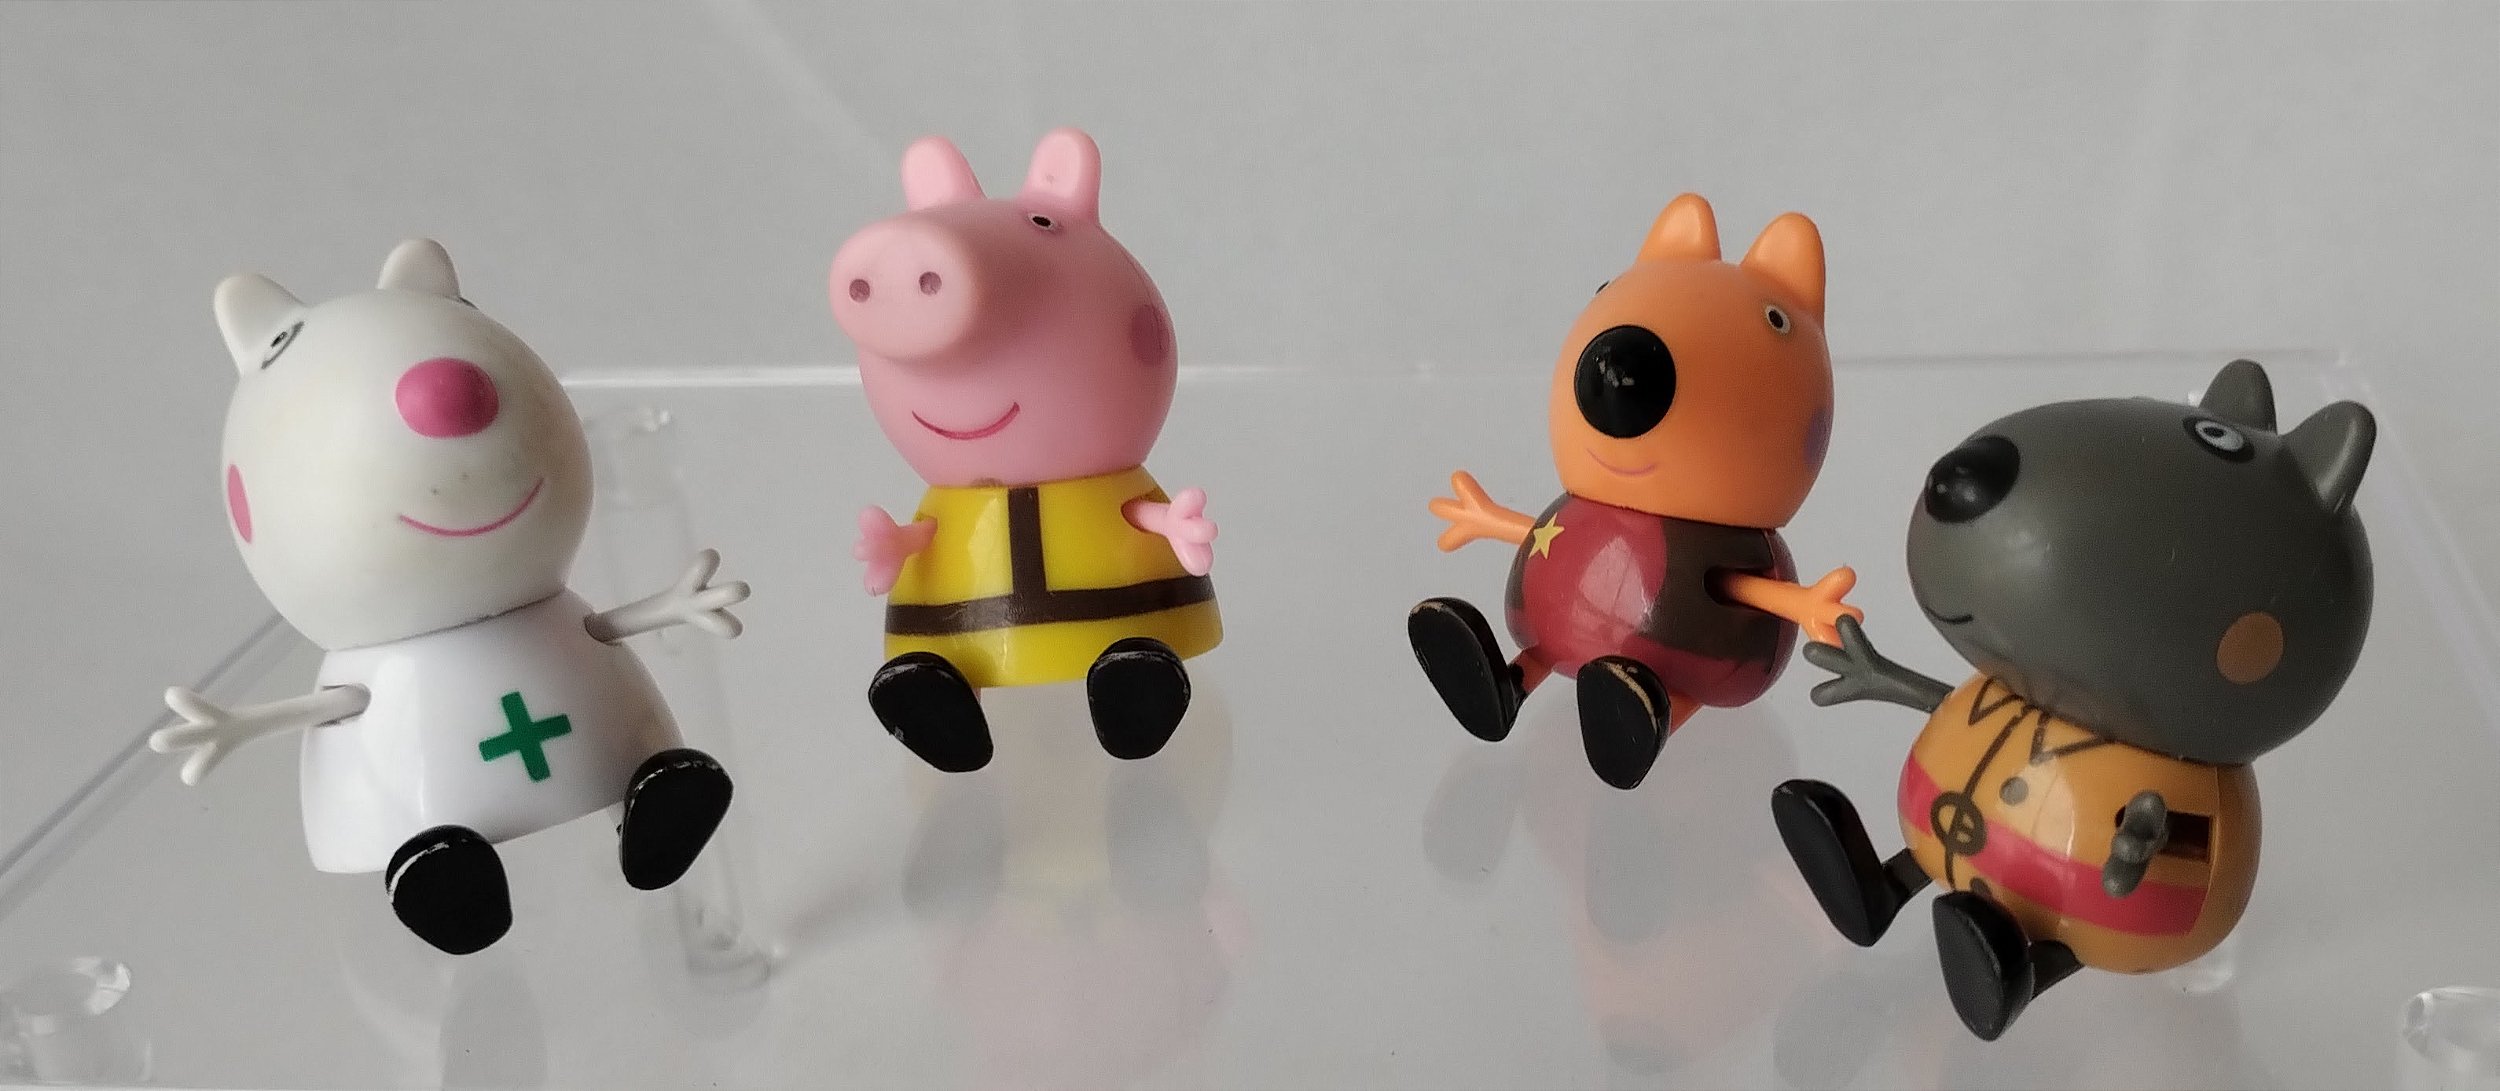 Hasbro Peppa Pig Casa Club Figure Multicolor